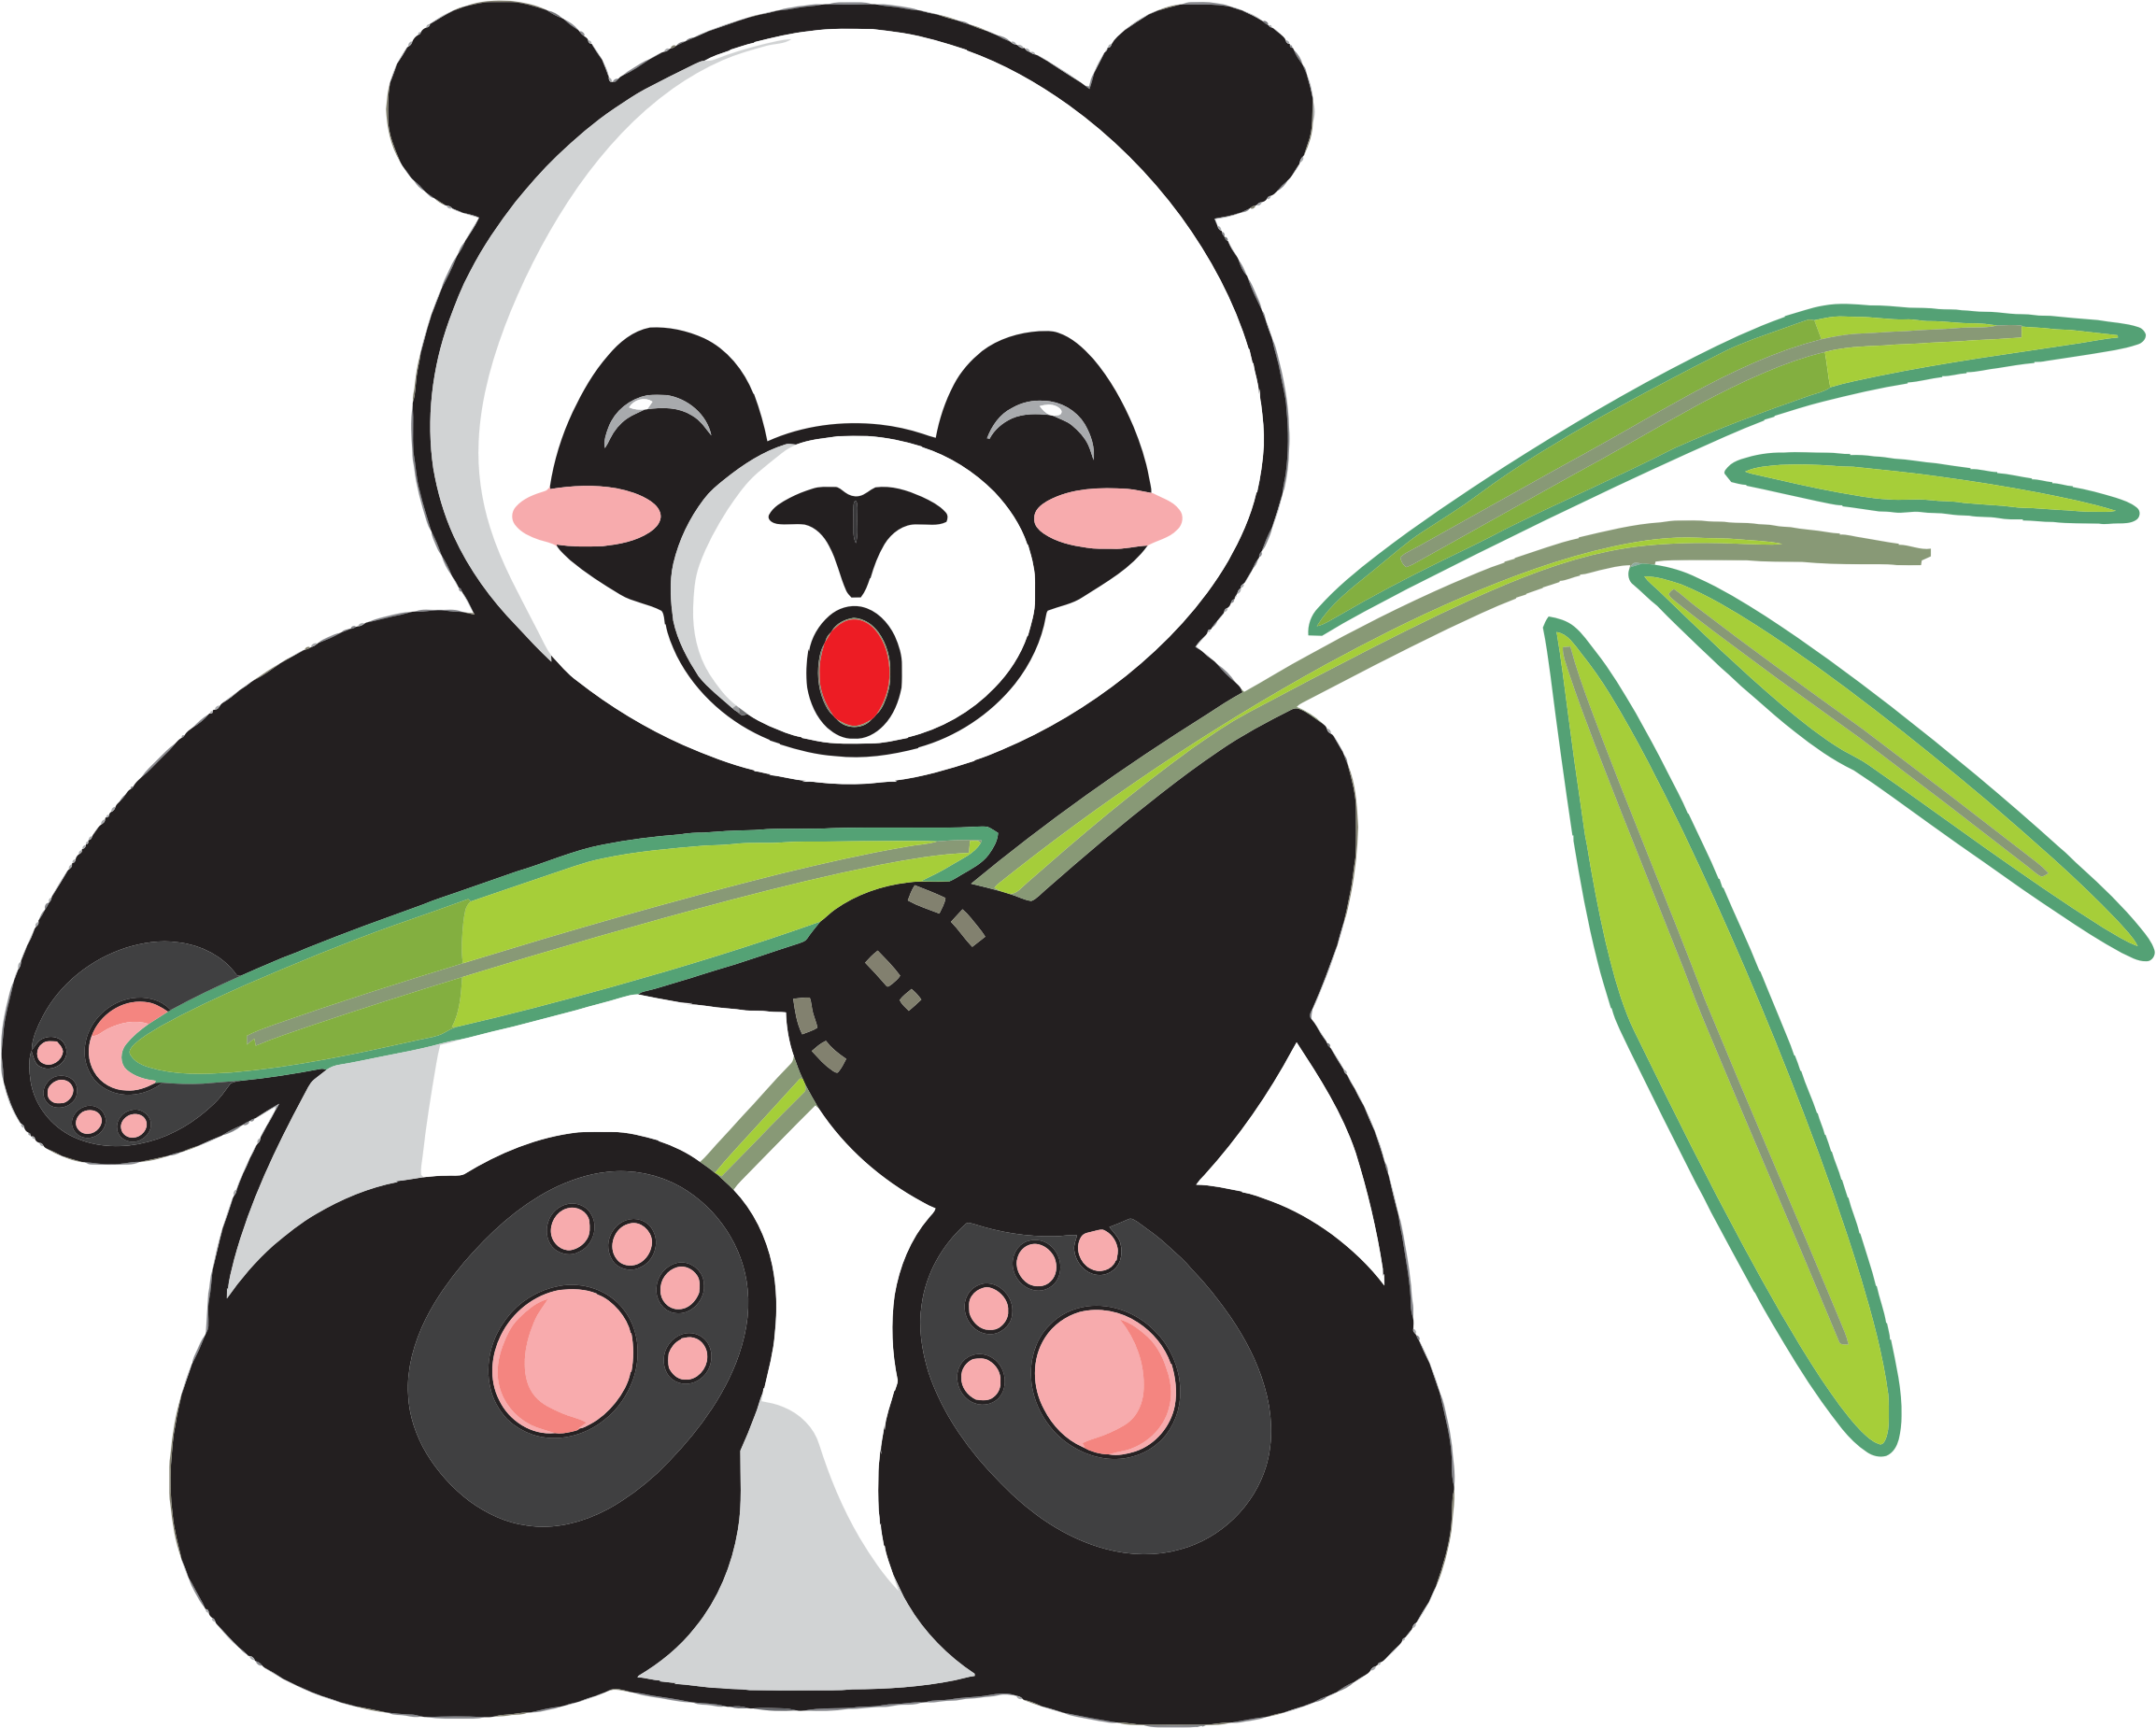 Giant panda Bear Cartoon Clip art